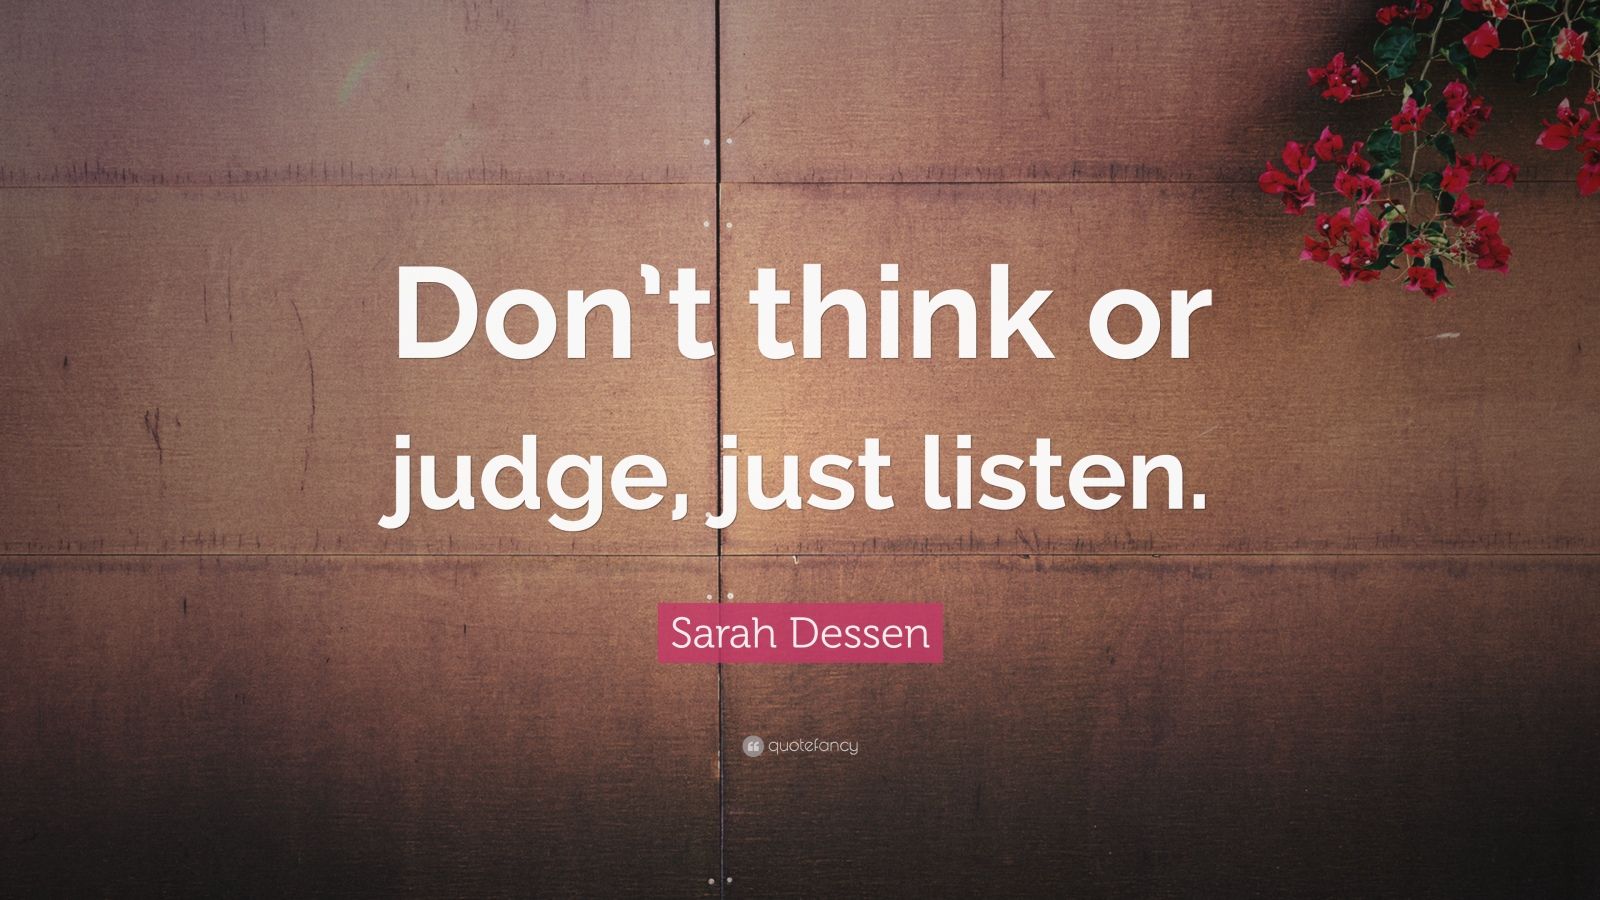 Just Listen by Sarah Dessen